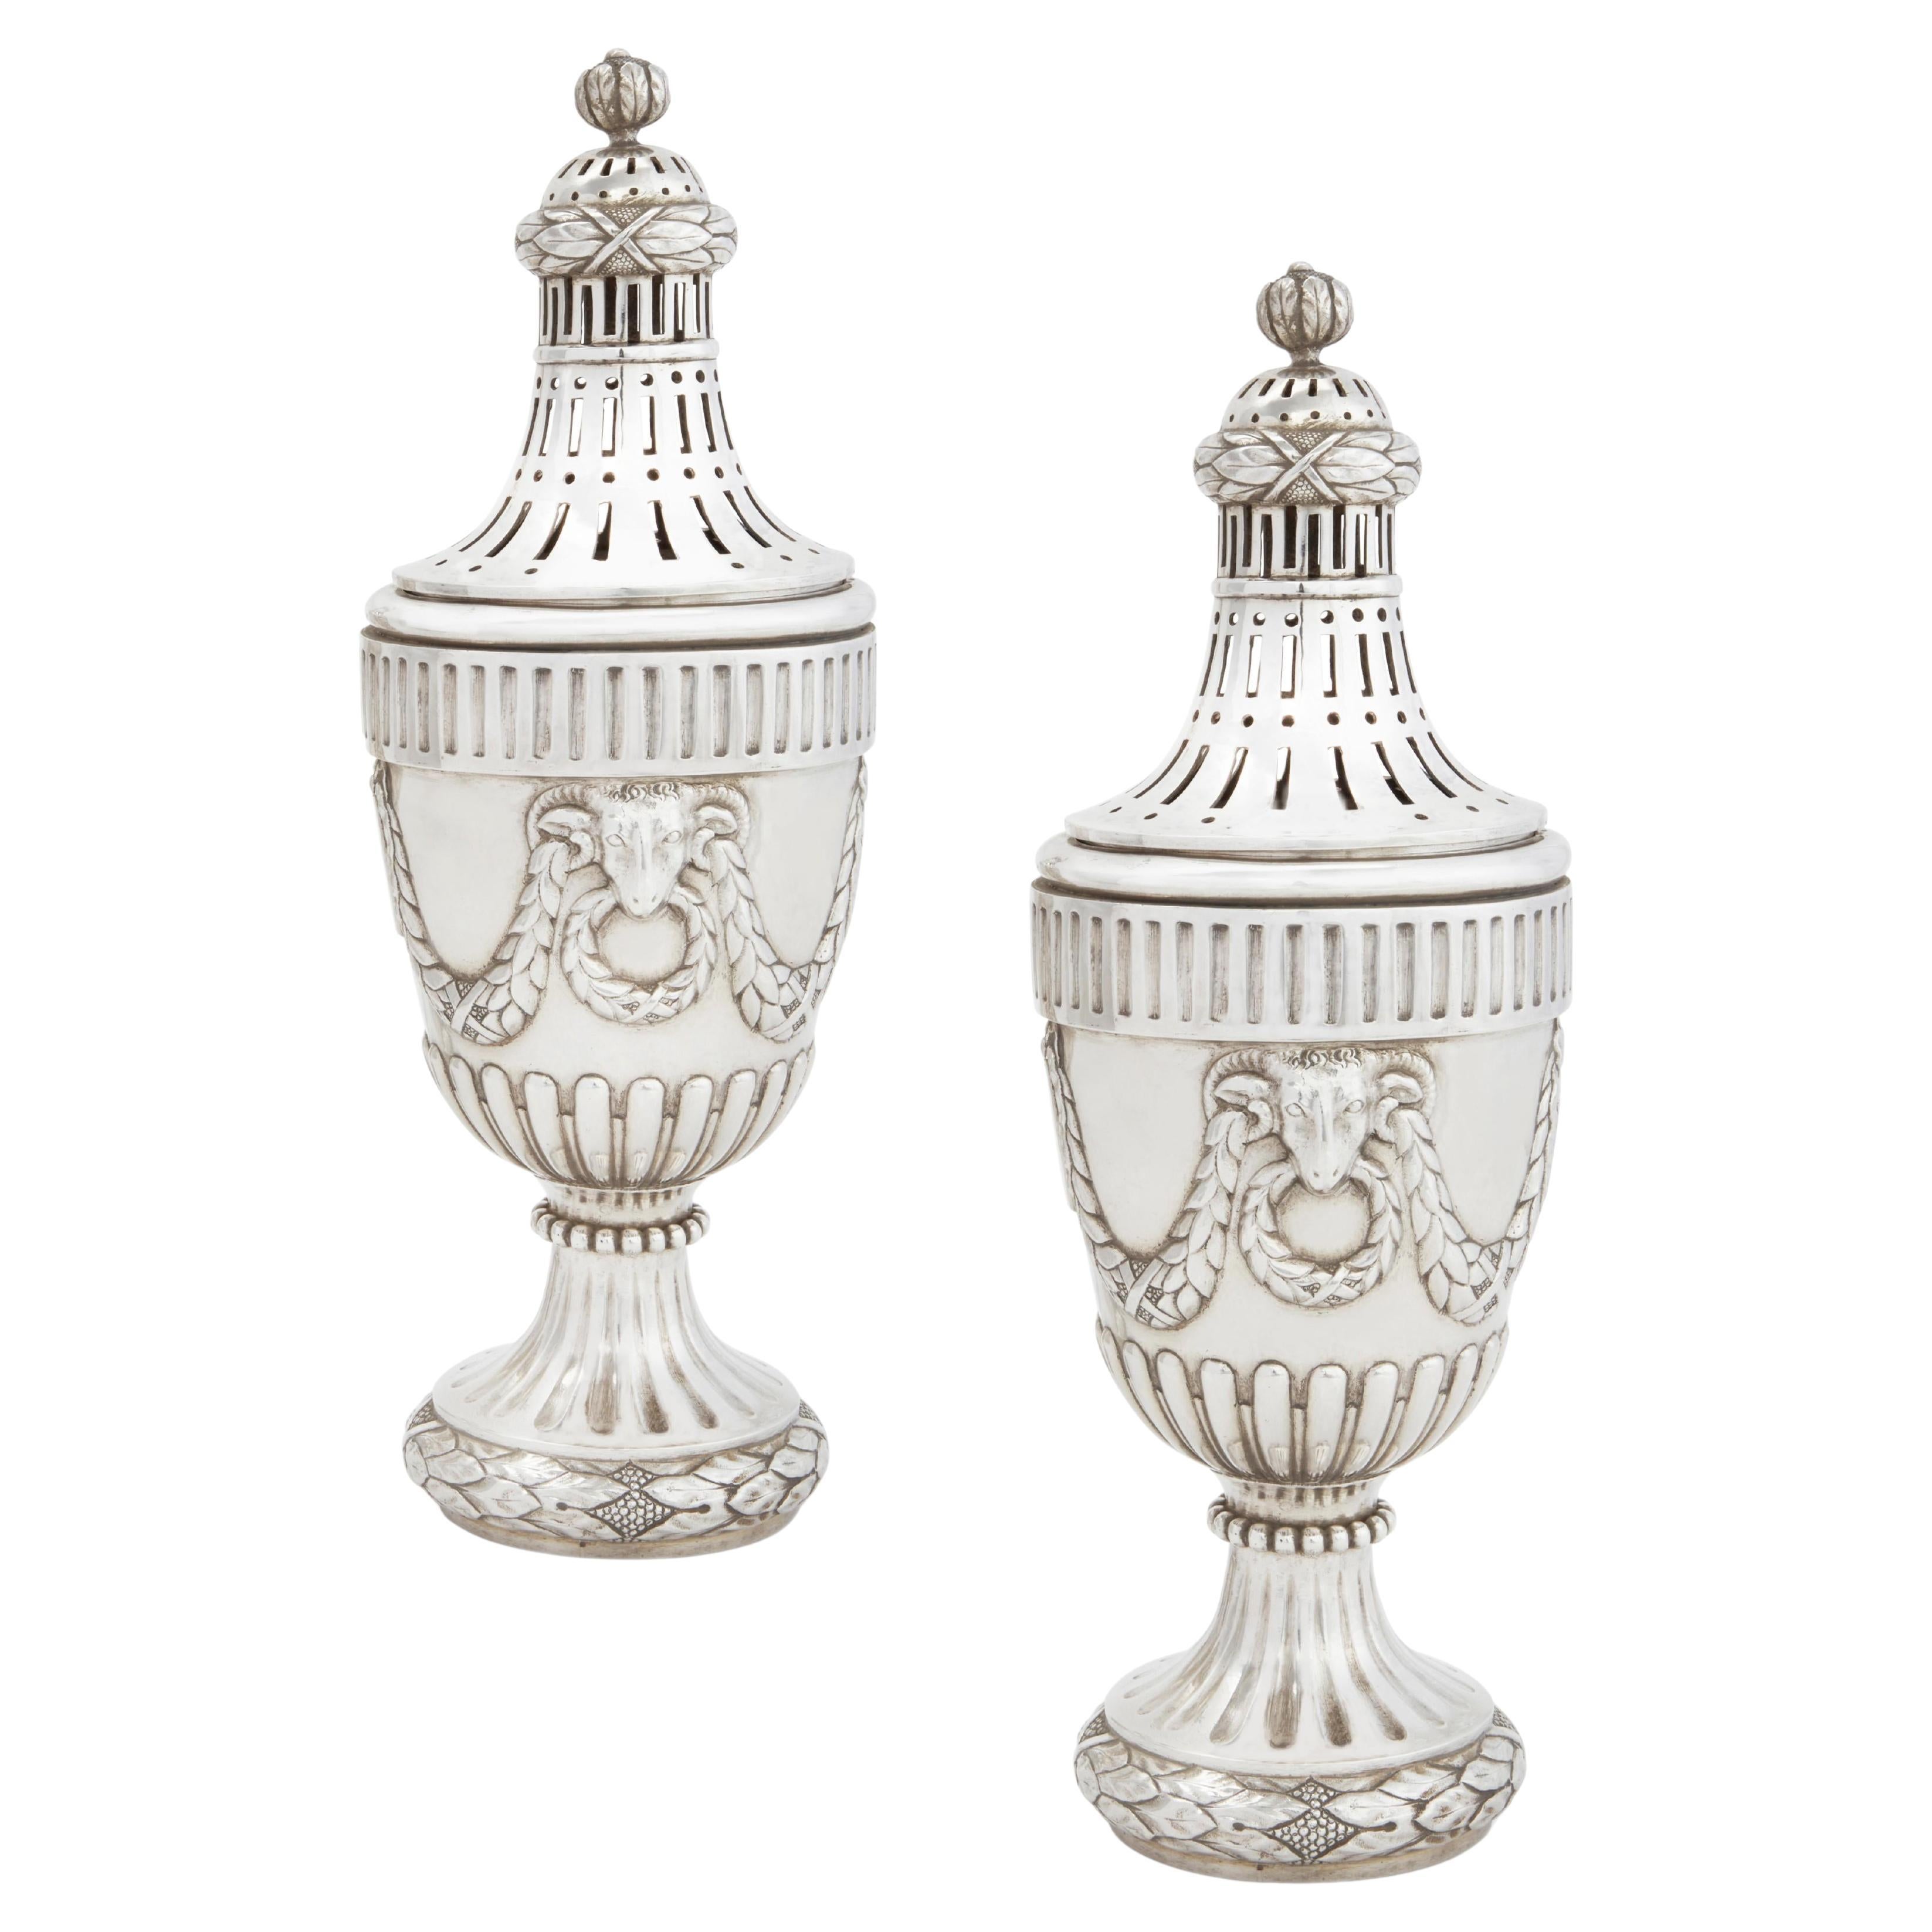 Paar niederländische neoklassizistische Silber-Popourri-Urnen